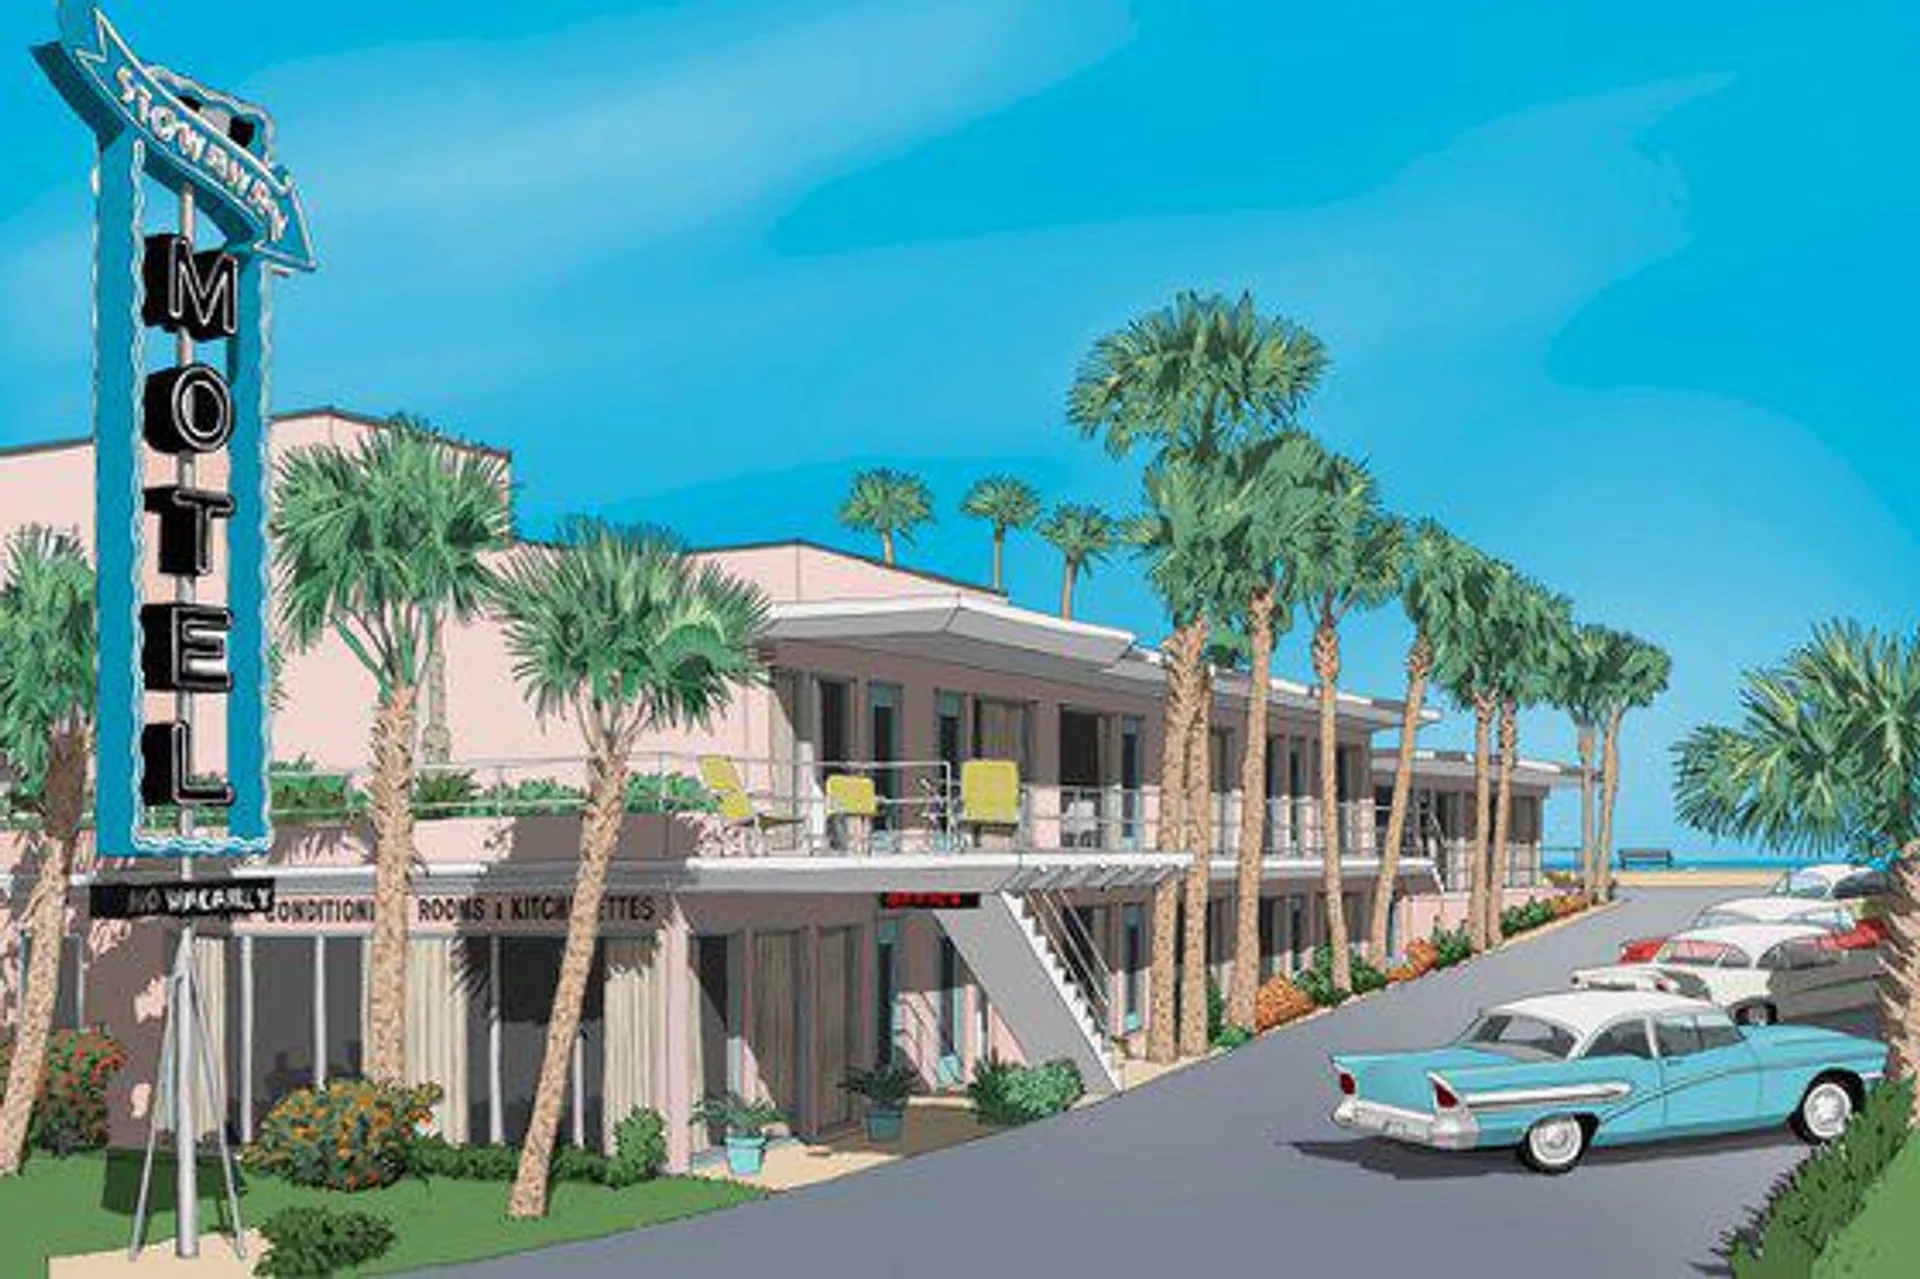 Stowaway Motel (2021)